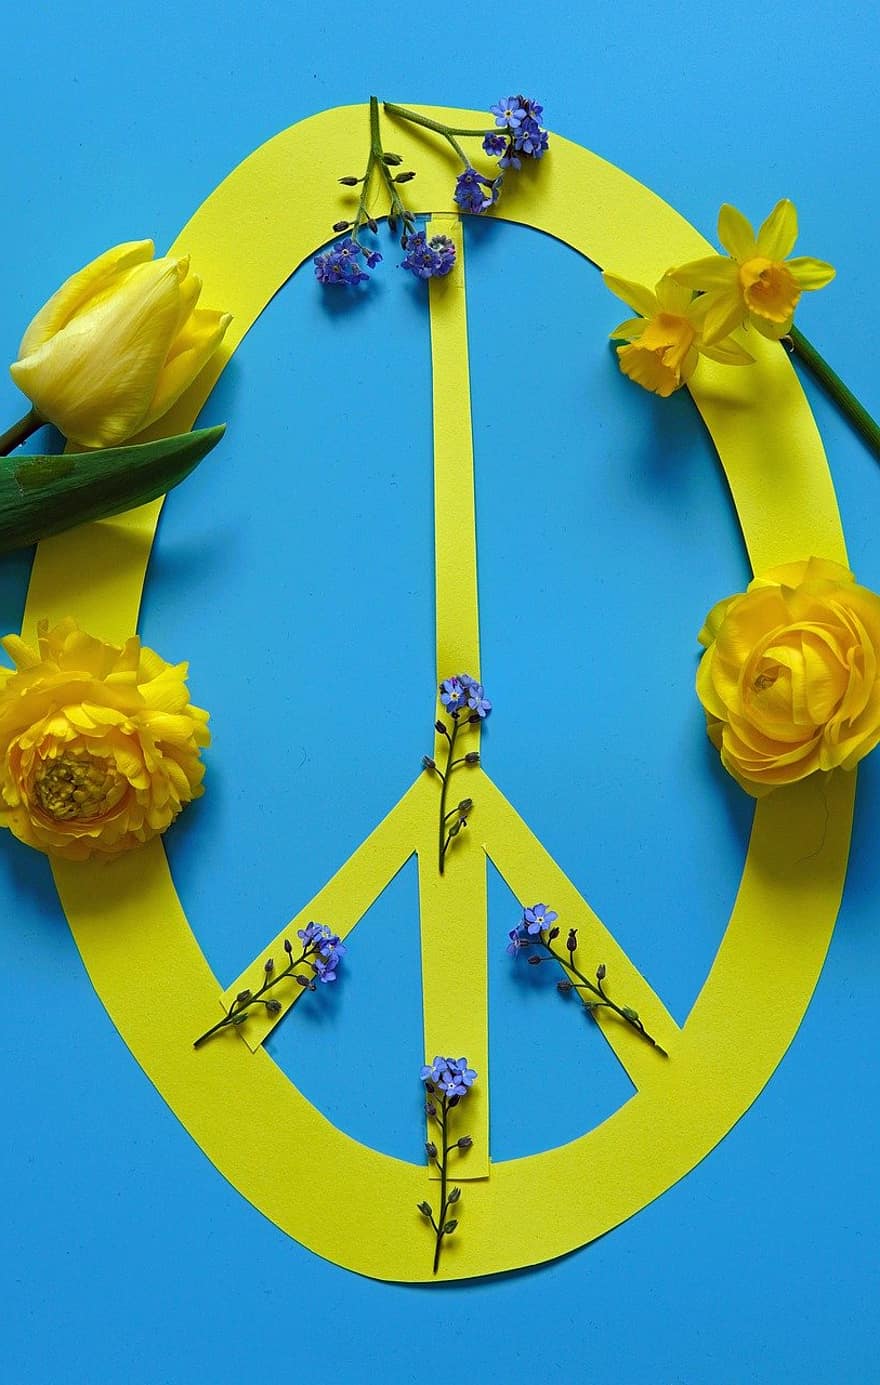 سلام ، علامة السلام ، ضد الحرب ، أوكرانيا ، اصفر اصفر ، ألوان أوكرانيا ، رمز ، عيد الفصح 2022 ، ربيع 2022 ، زهرة ، أزهار